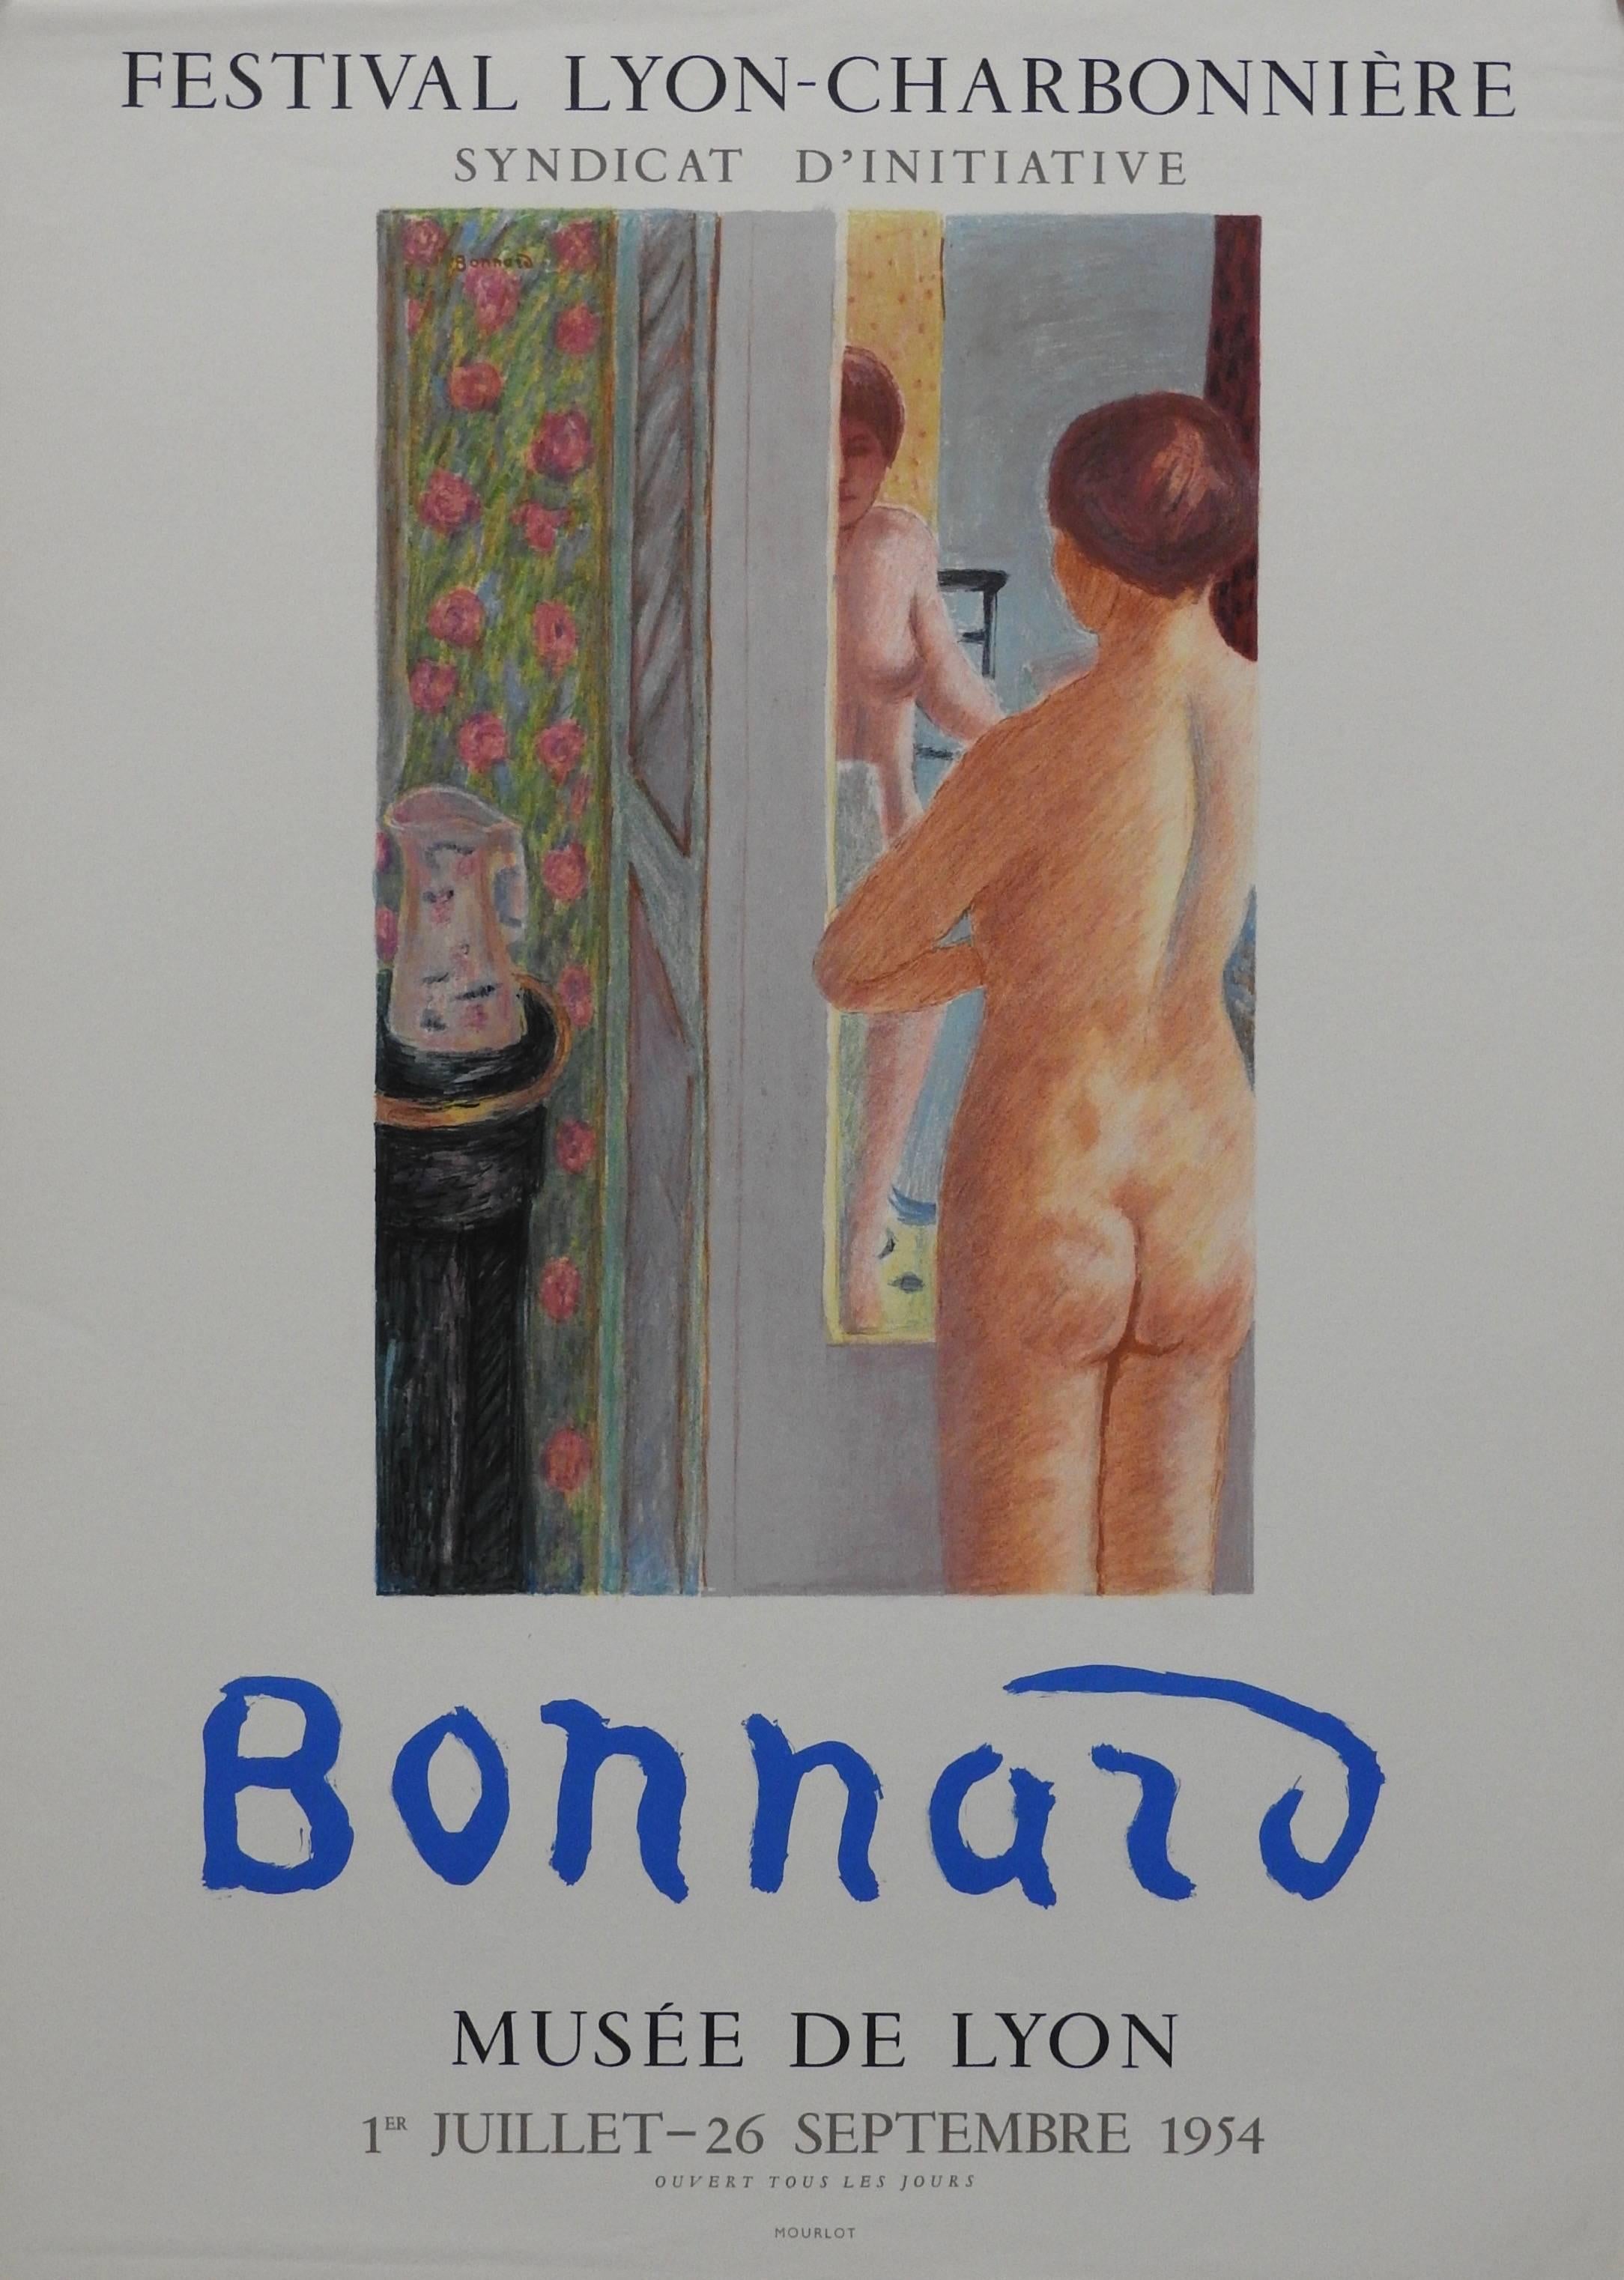 Pierre Bonnard Figurative Print - Festival Lyon- Charbonniére